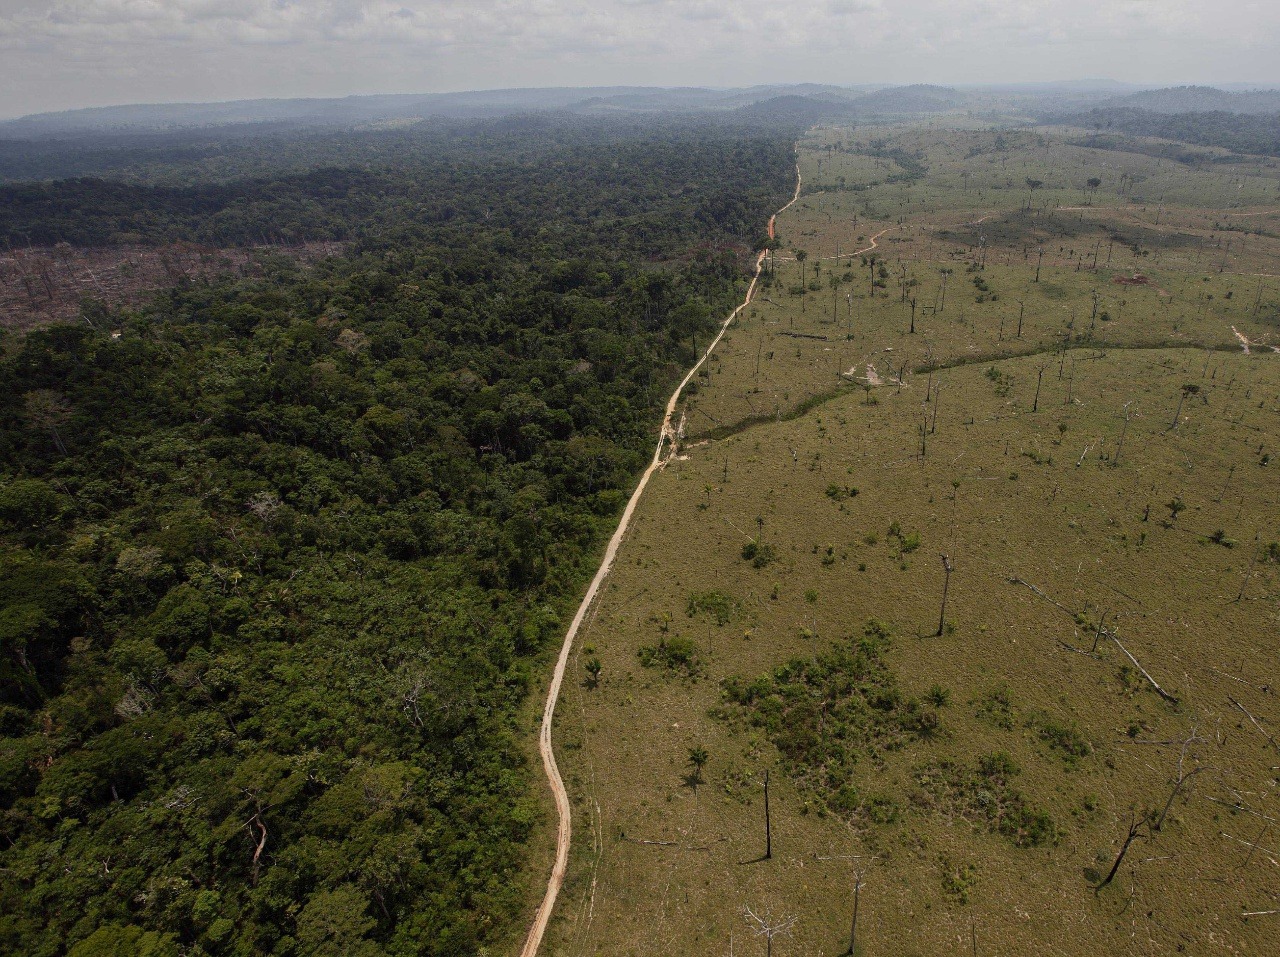 Na základe návrhu by sa mal prales zmenšiť o 3 480 kilometrov štvorcových, ktoré by sa mohli využívať na výrub stromov, ťažbu a poľnohospodárske účely